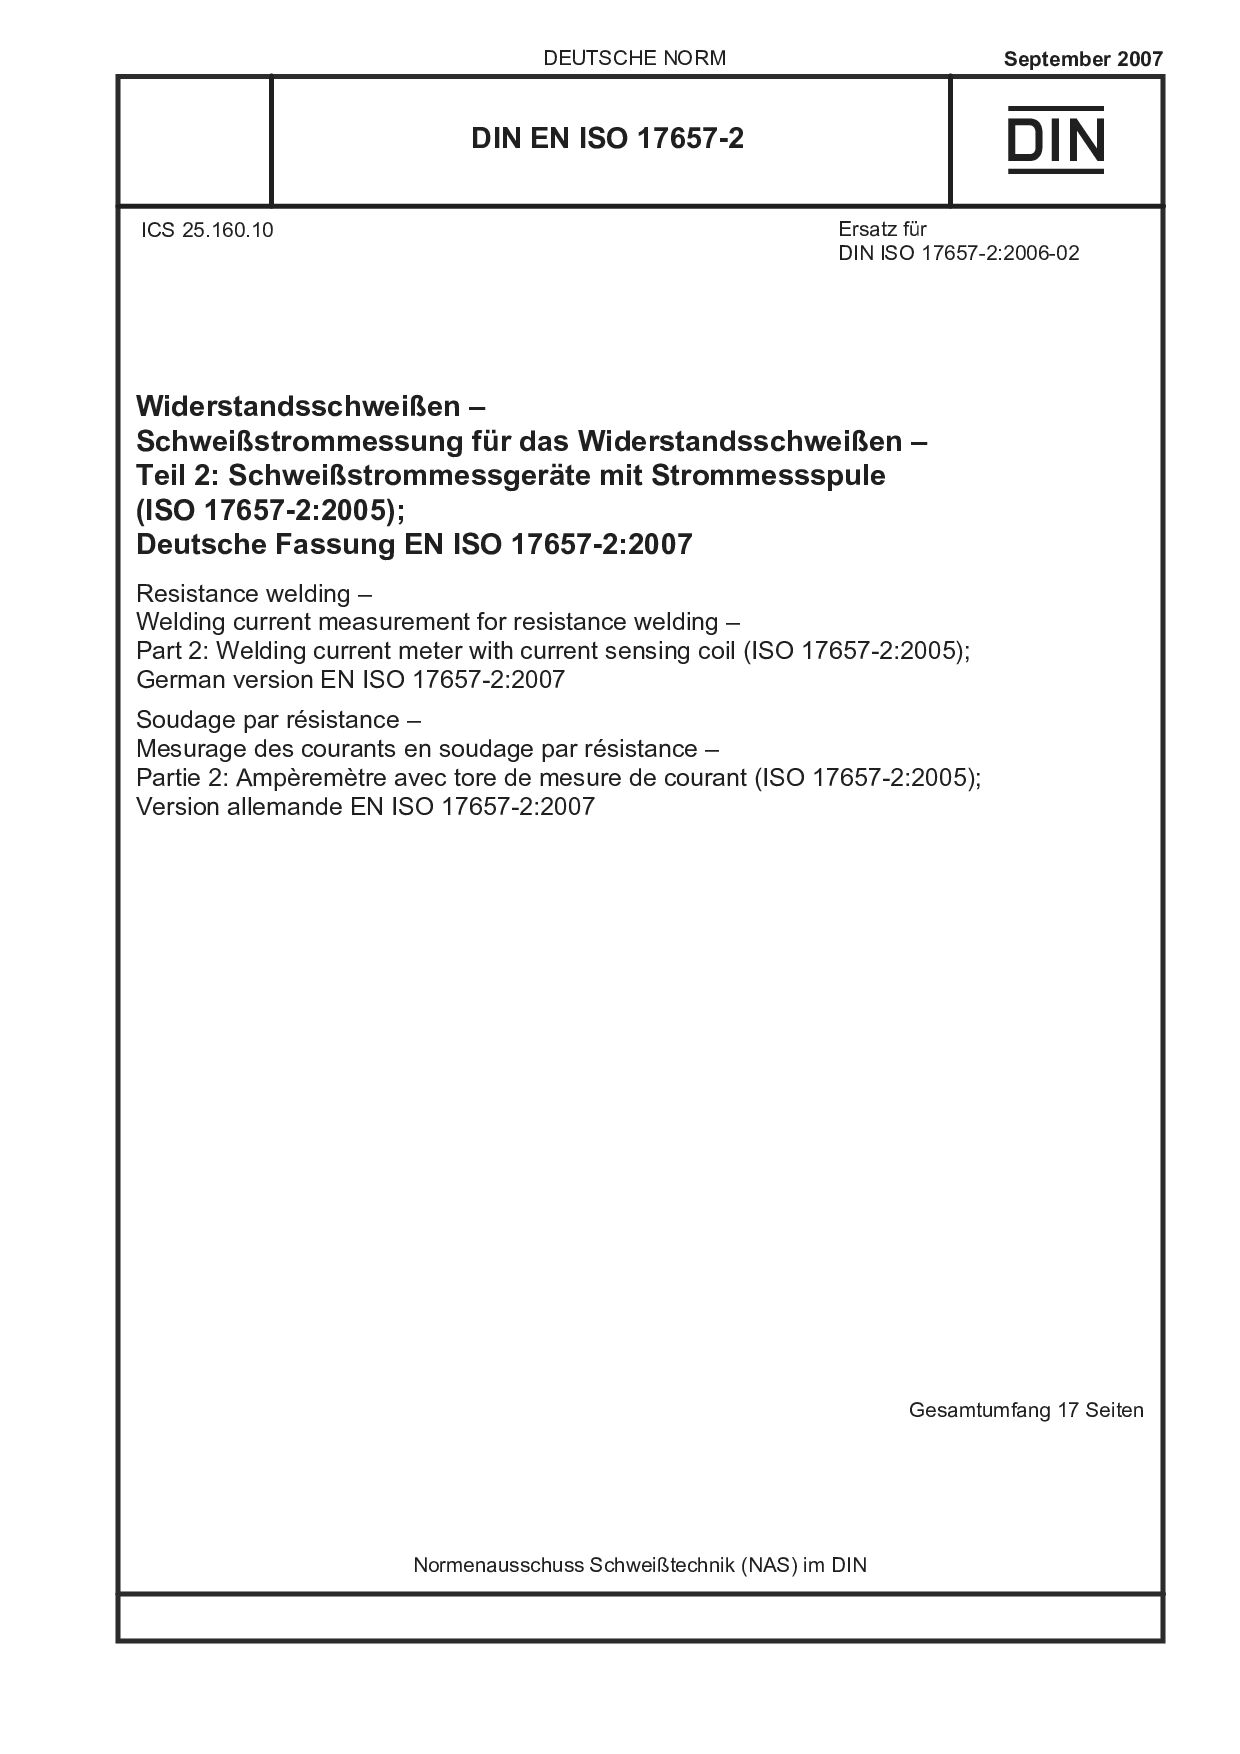 DIN EN ISO 17657-2:2007封面图